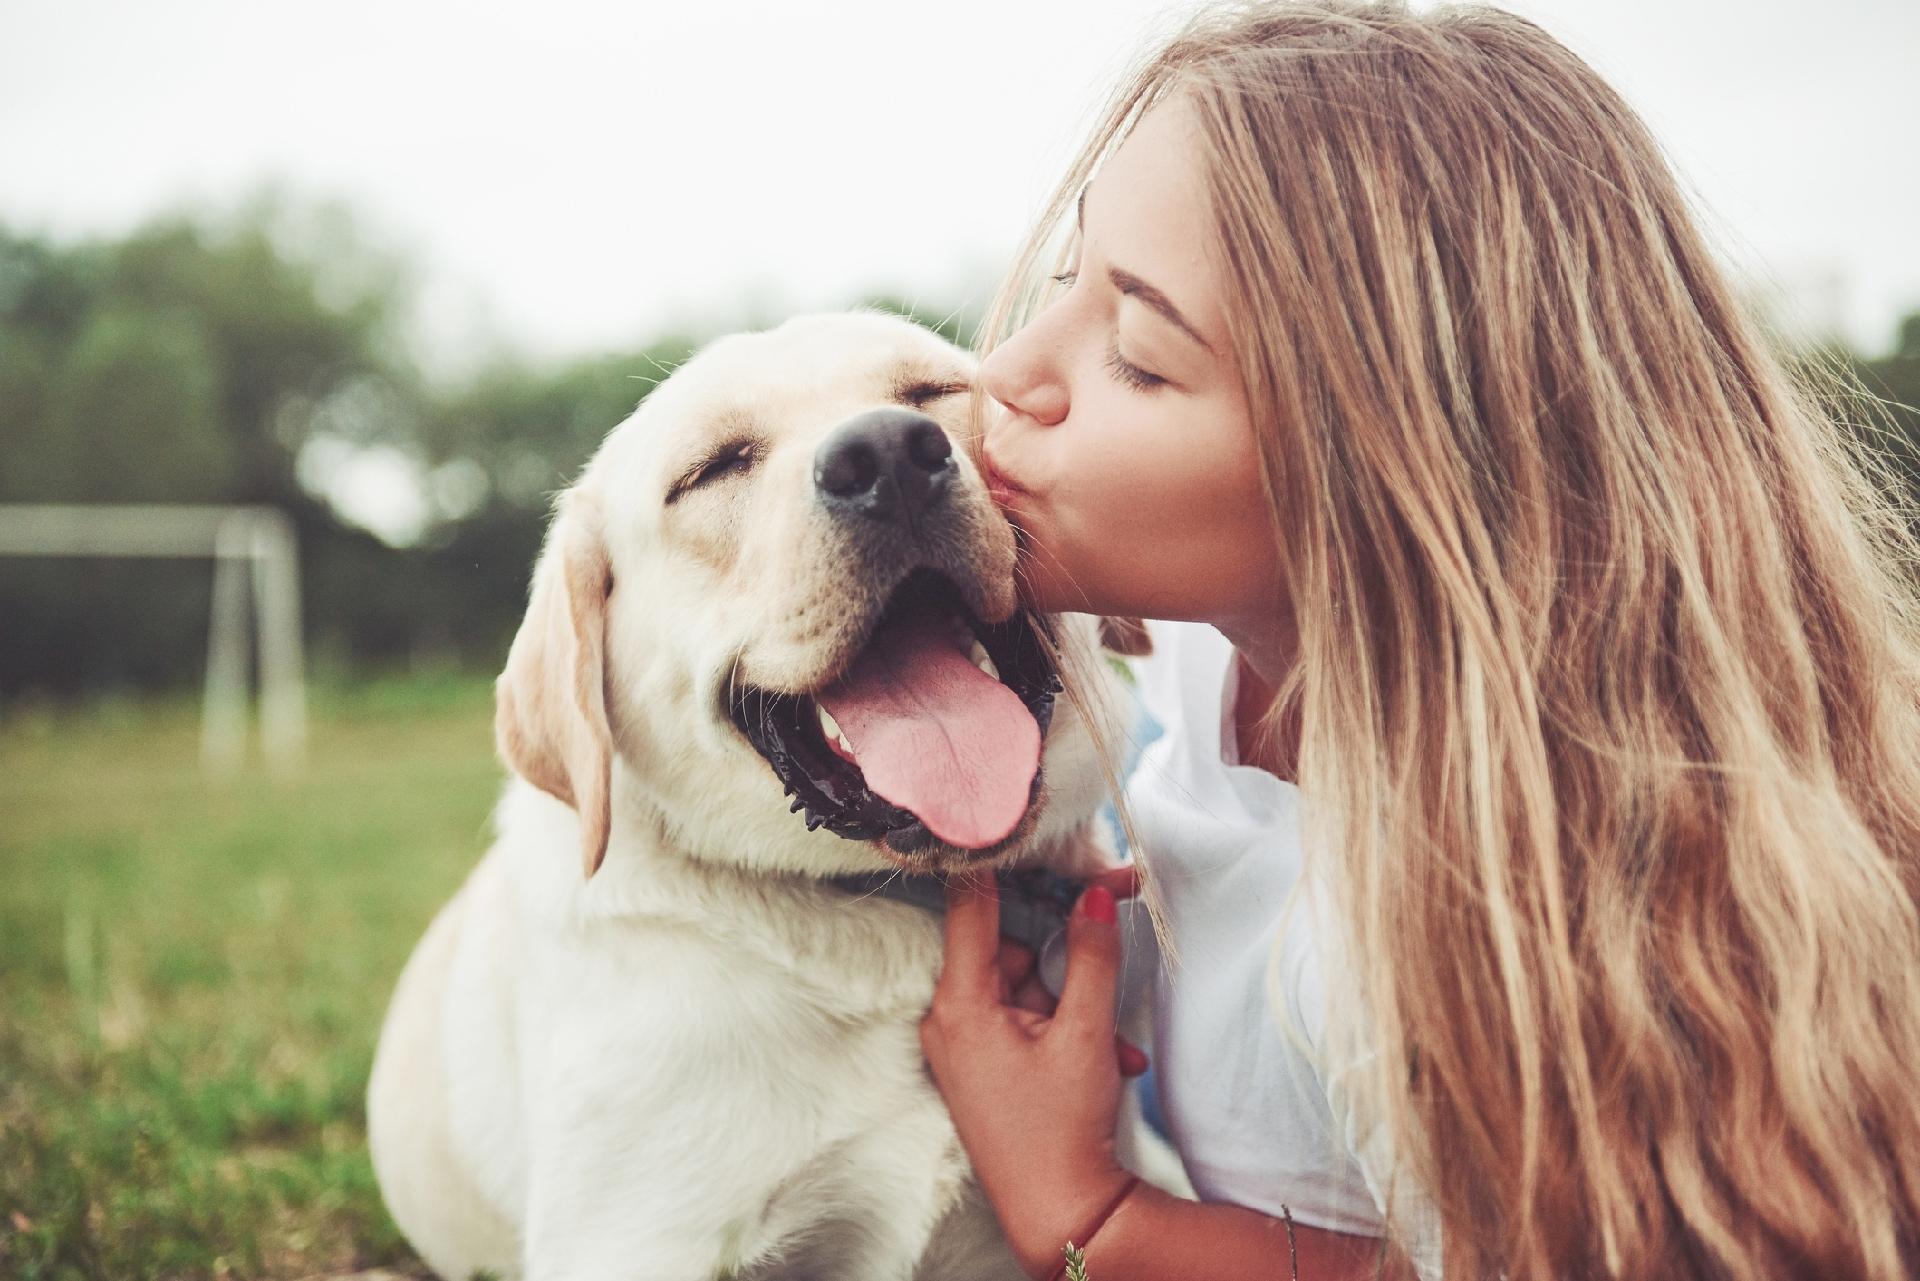 Cuidados com cachorro: aprenda como cuidar de seu animal de estimação